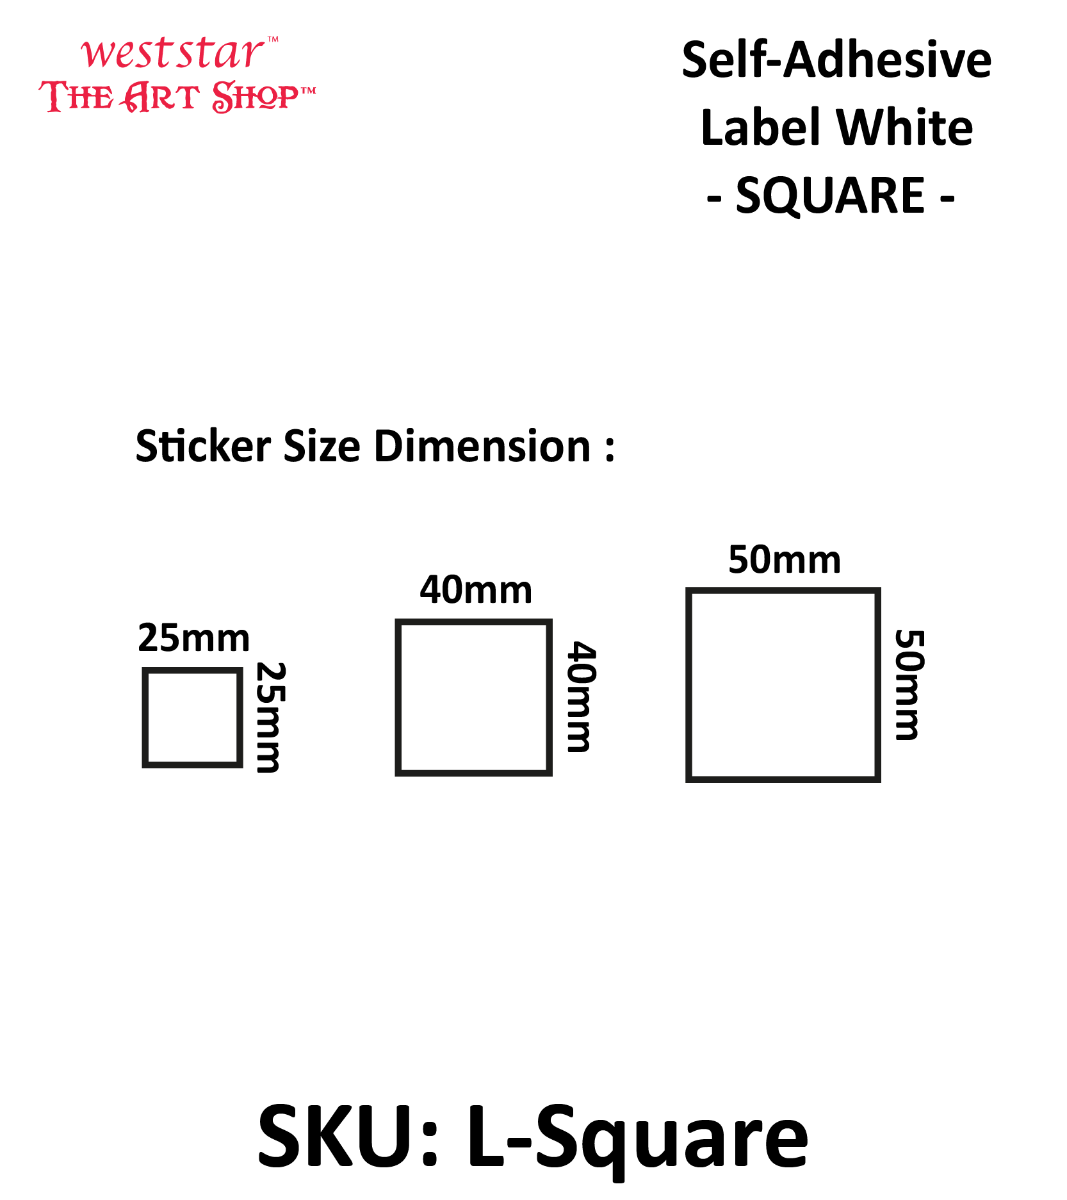 Self-Adhesive Label White|SQUARE